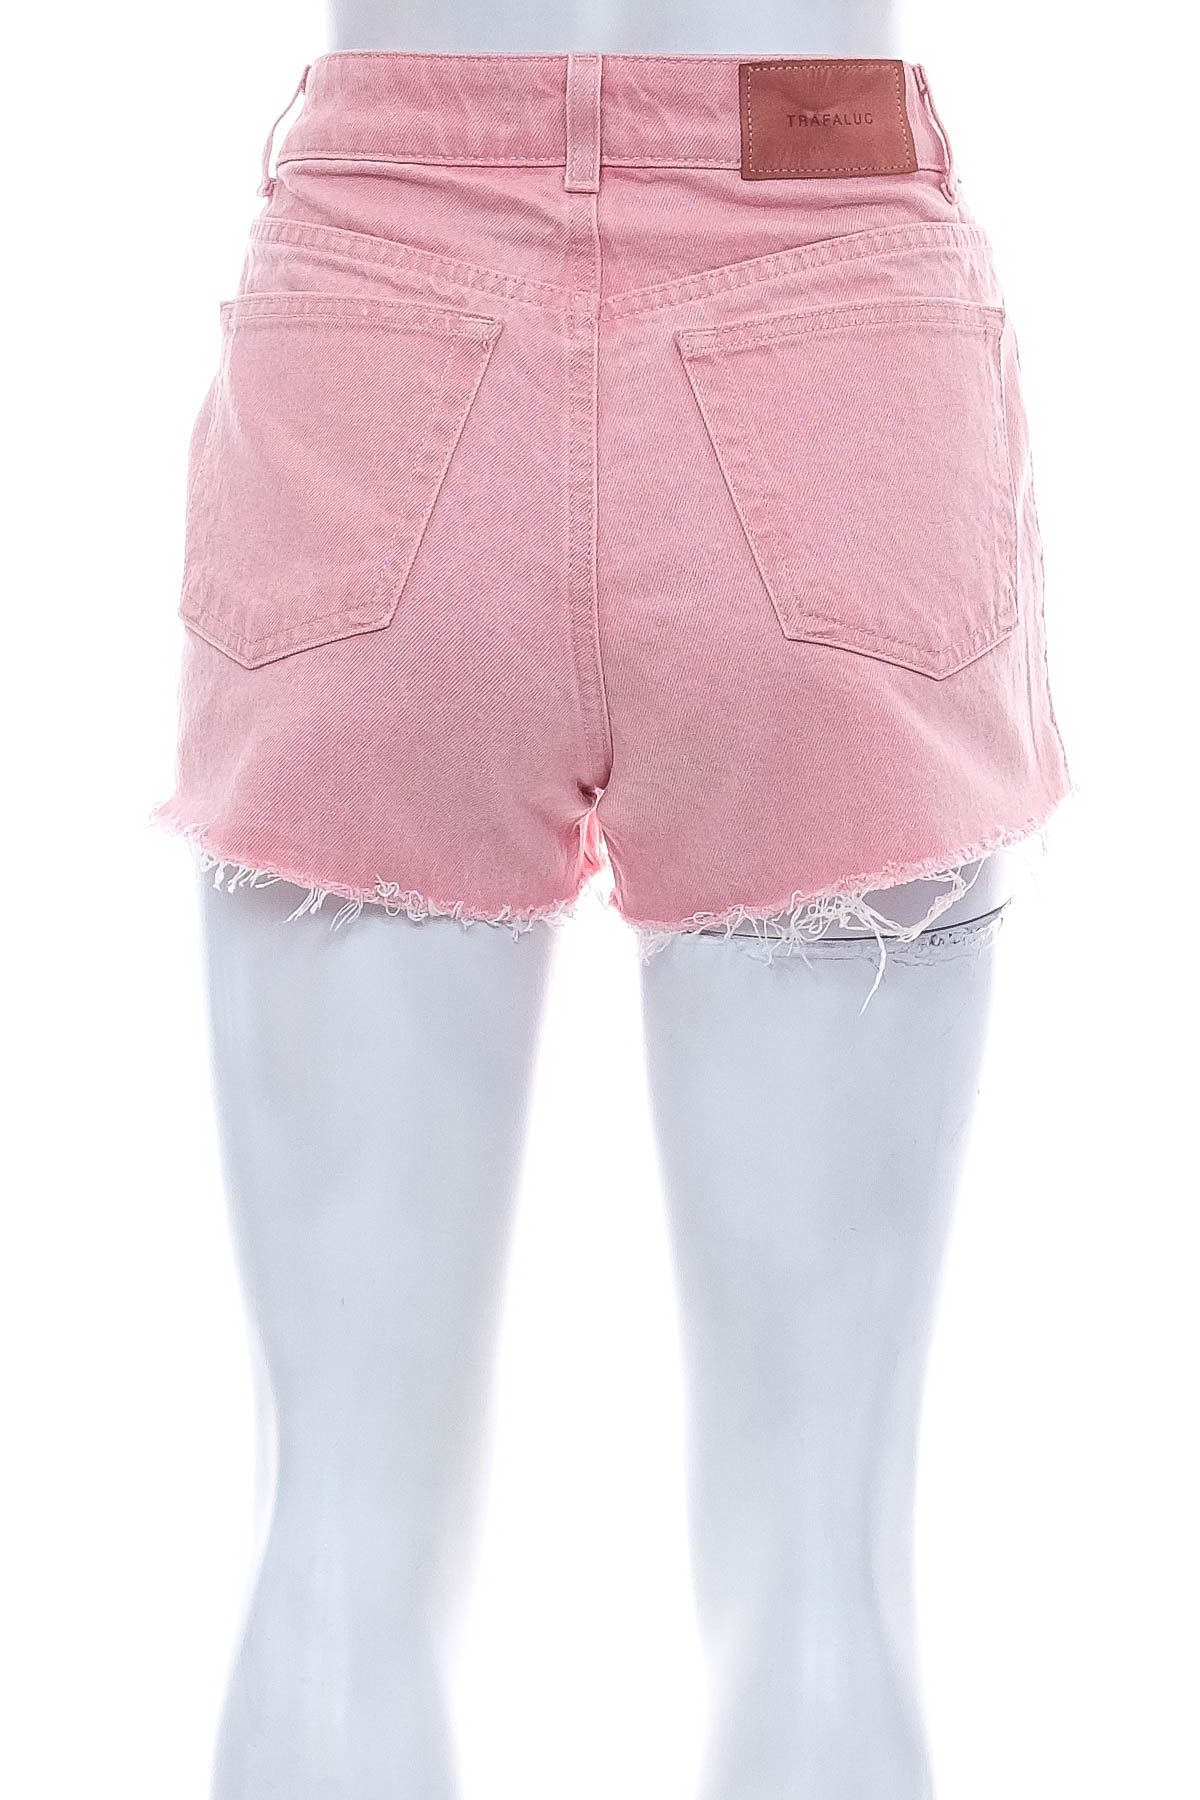 Female shorts - ZARA TRF - 1